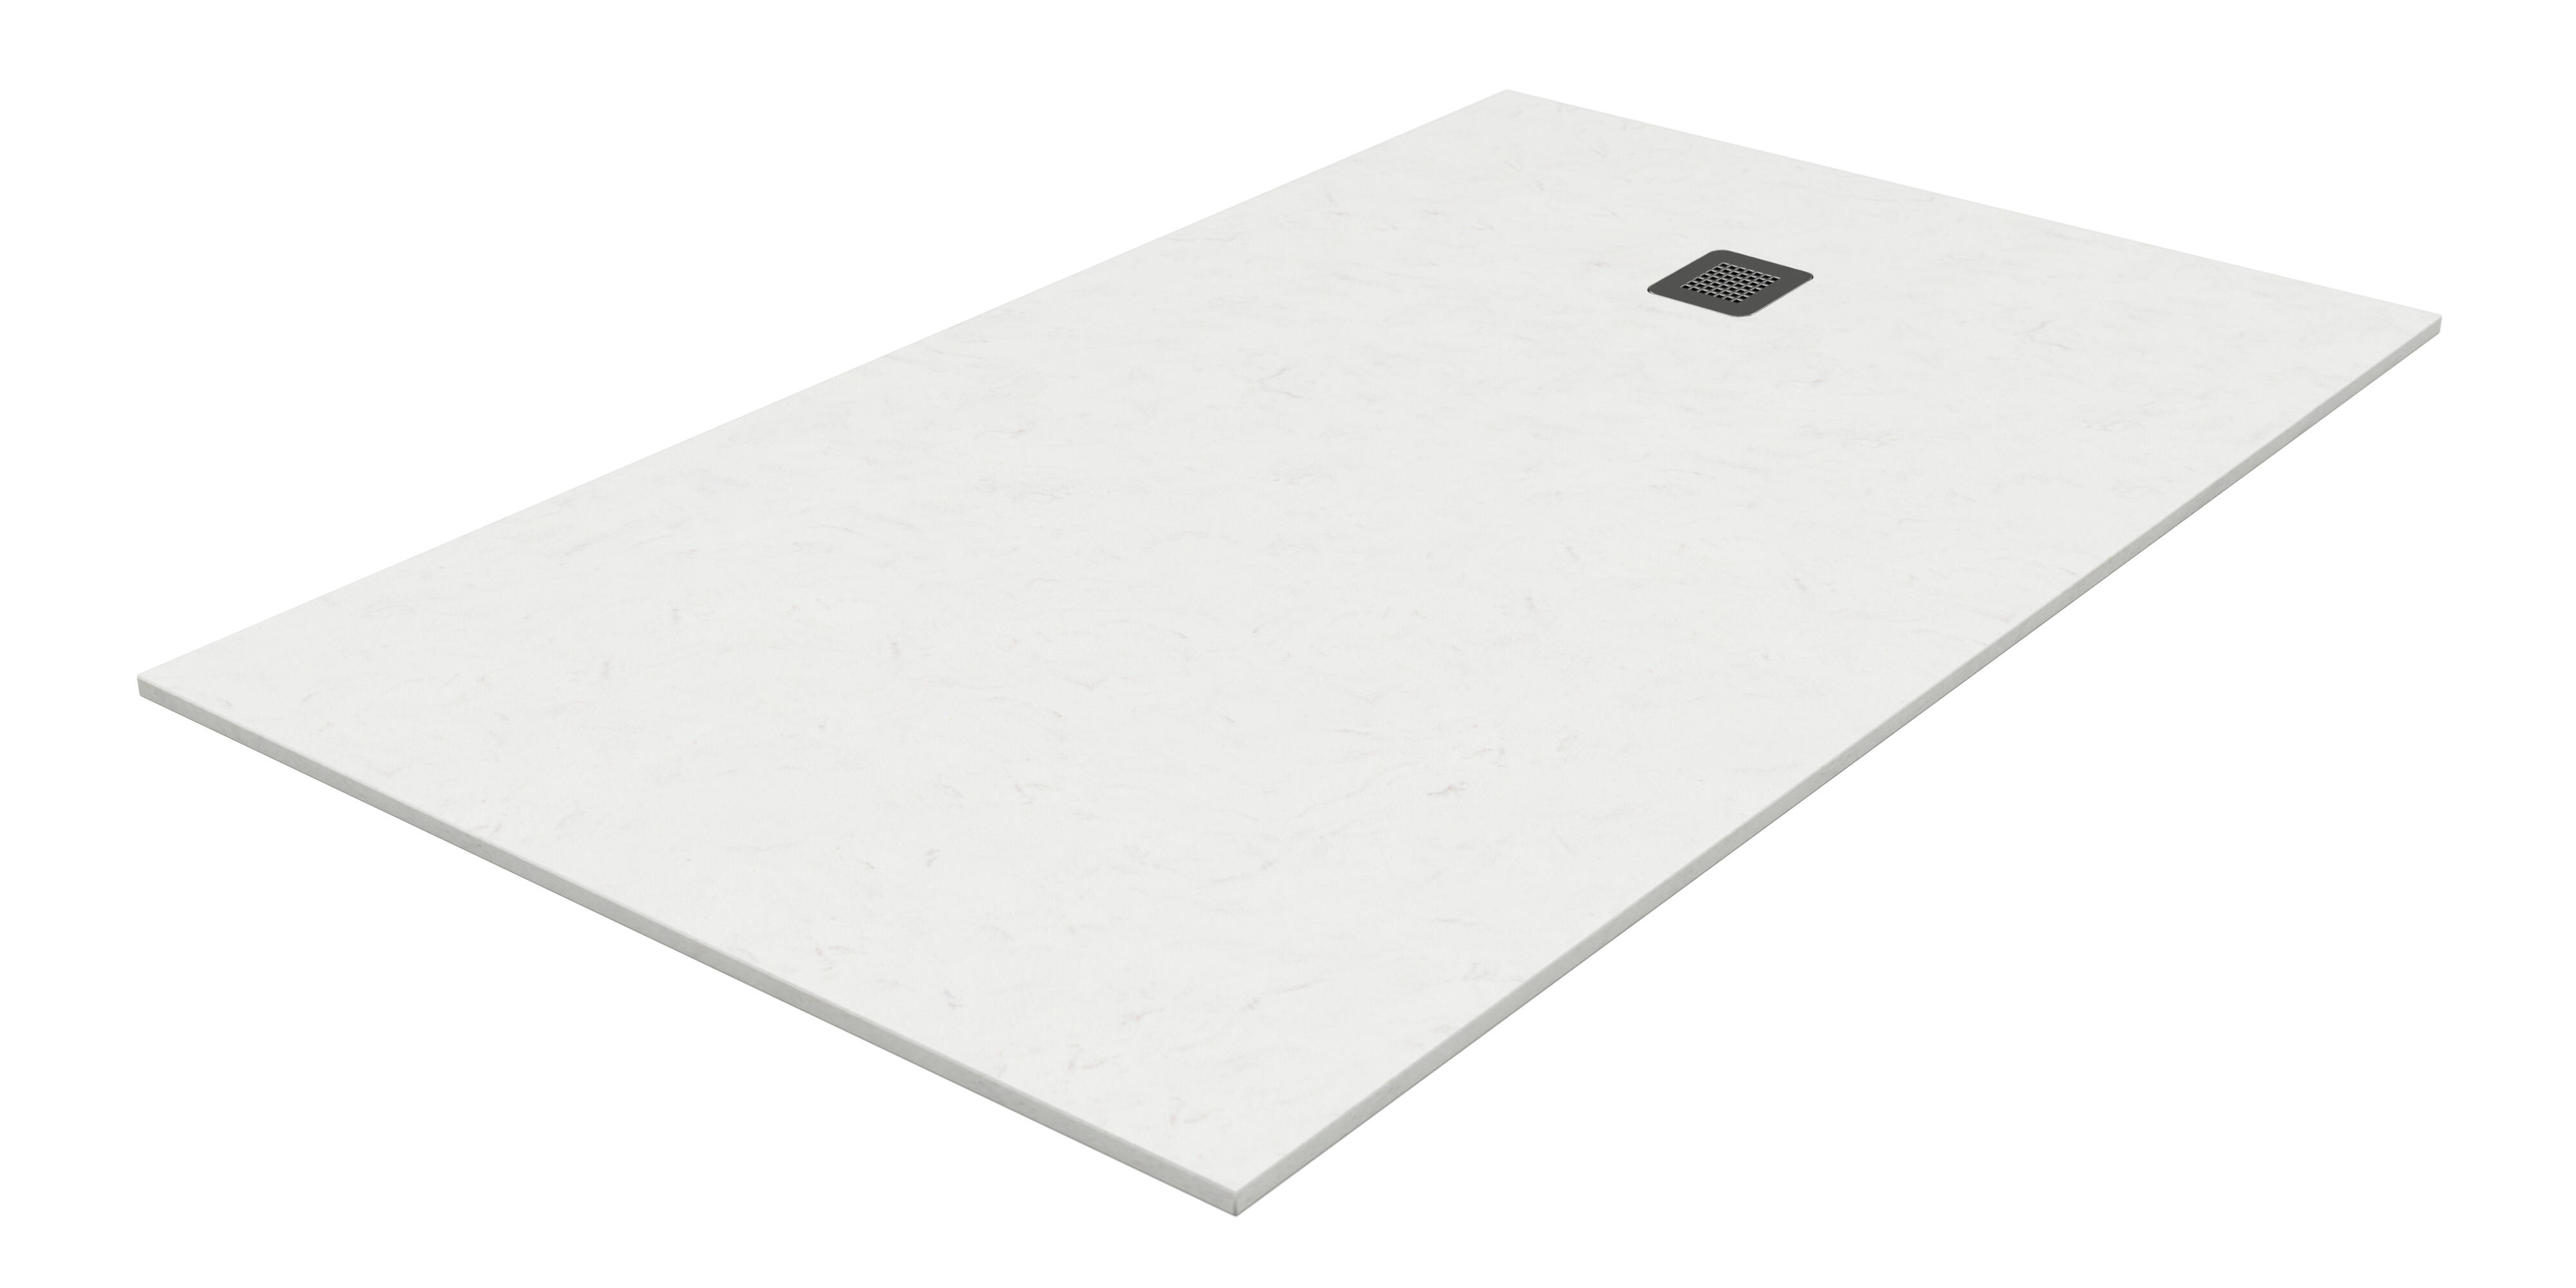 Plato de ducha kioto 160x70 cm blanco